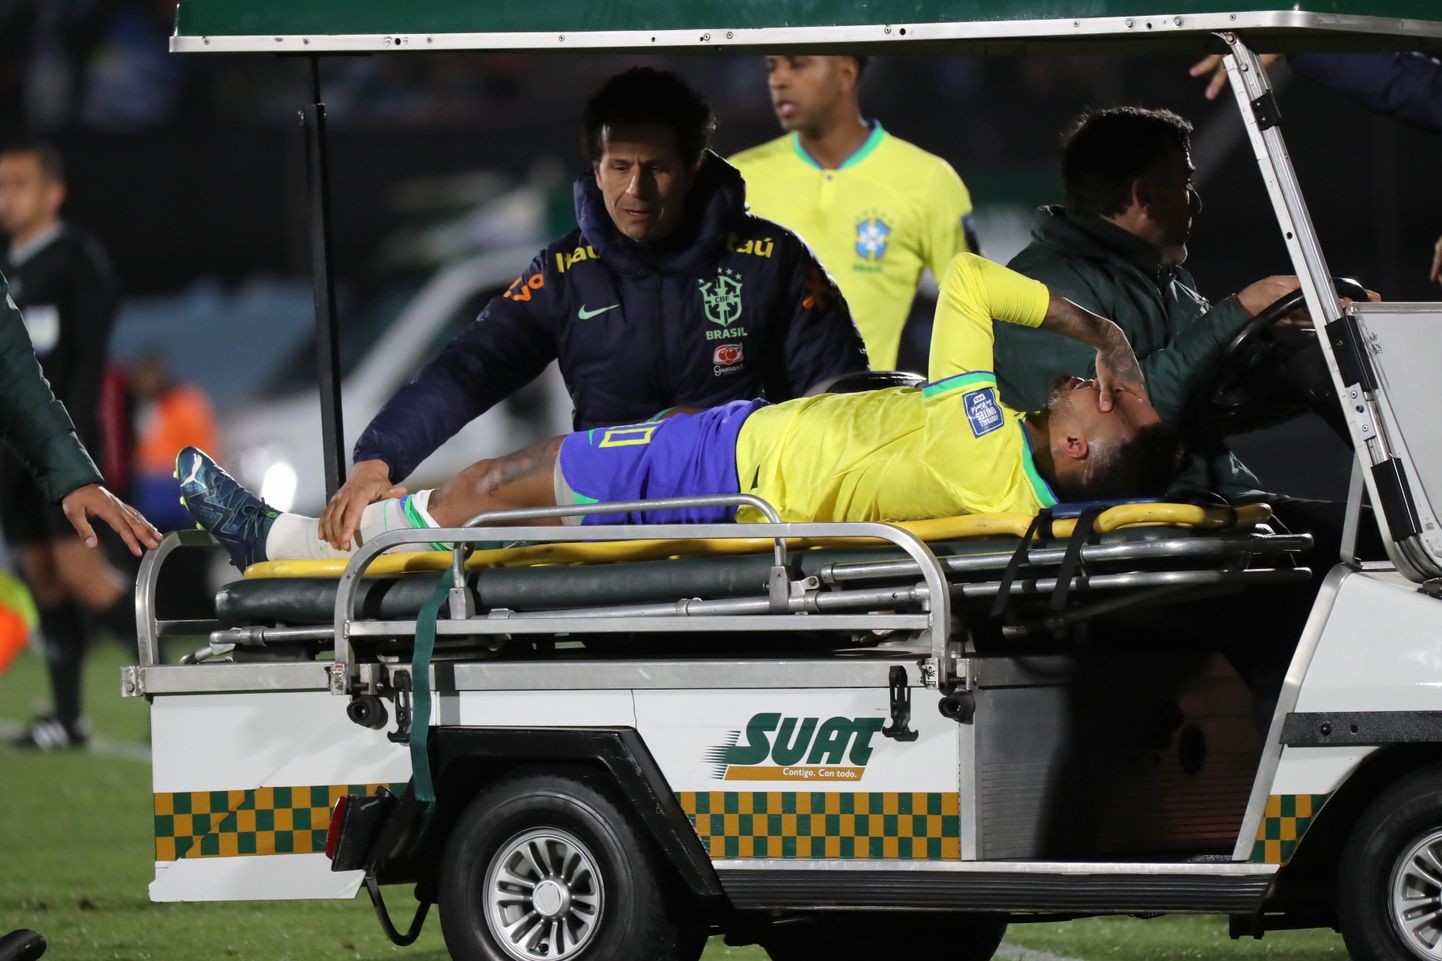 18 октября Неймар получил тяжелую травму в ходе матча с Уругваем. Восстановление после операции займет, предположительно, десять месяцев.